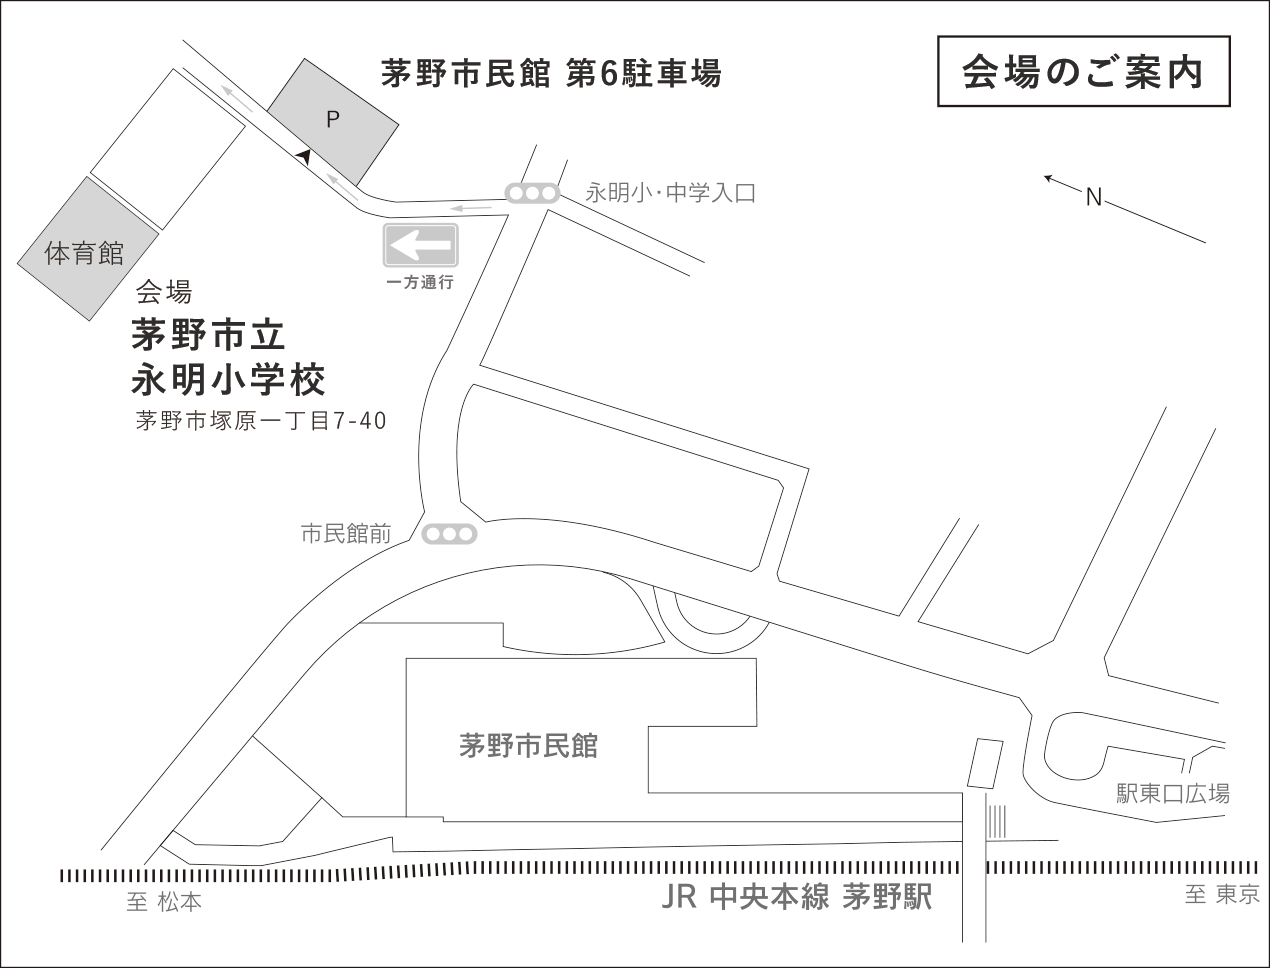 会場と駐車場の案内地図